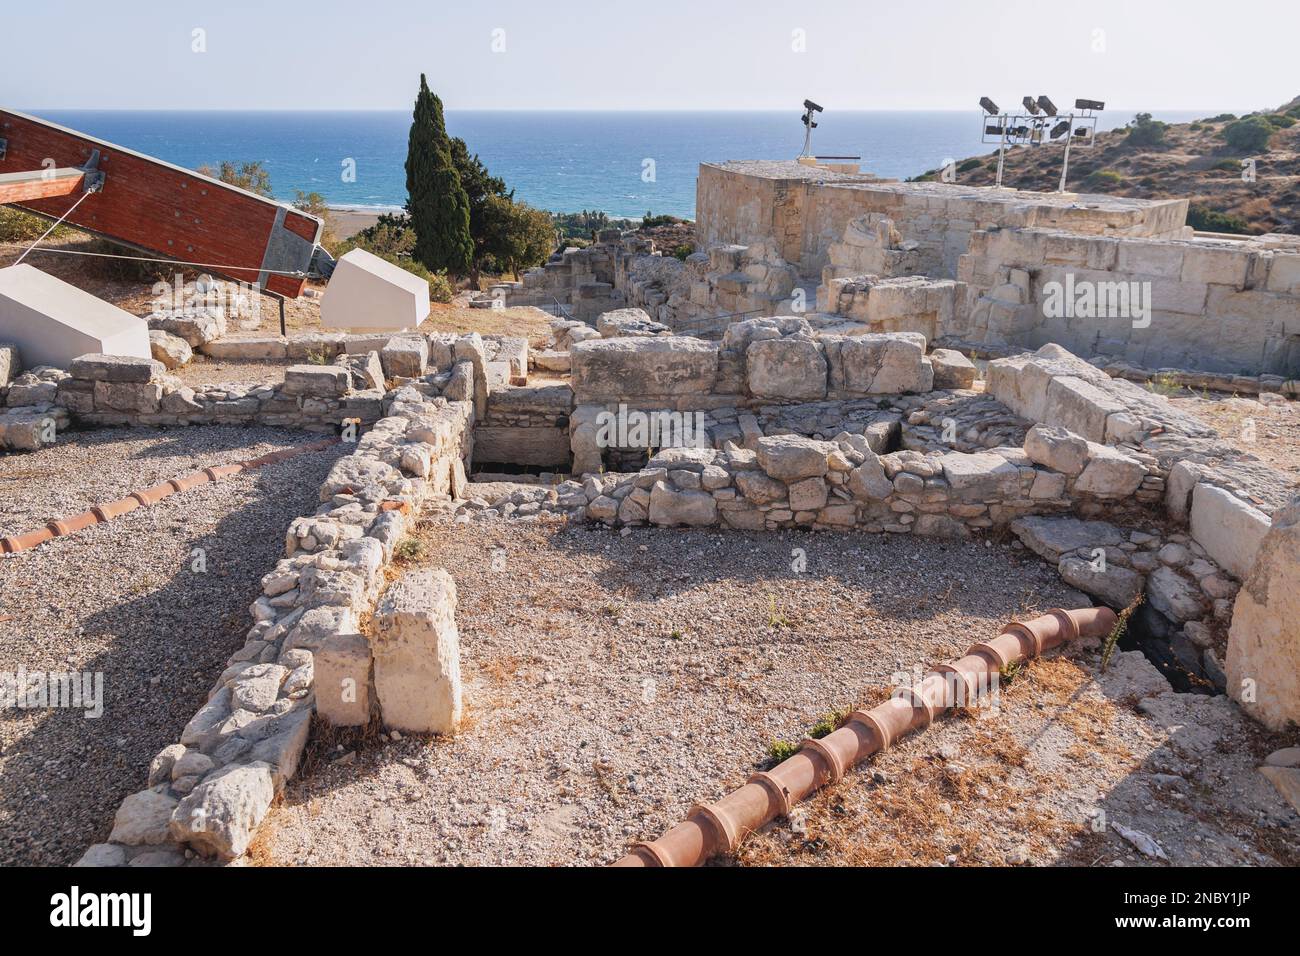 Rovine del sito archeologico di Kourion nel paese dell'isola di Cipro Foto Stock